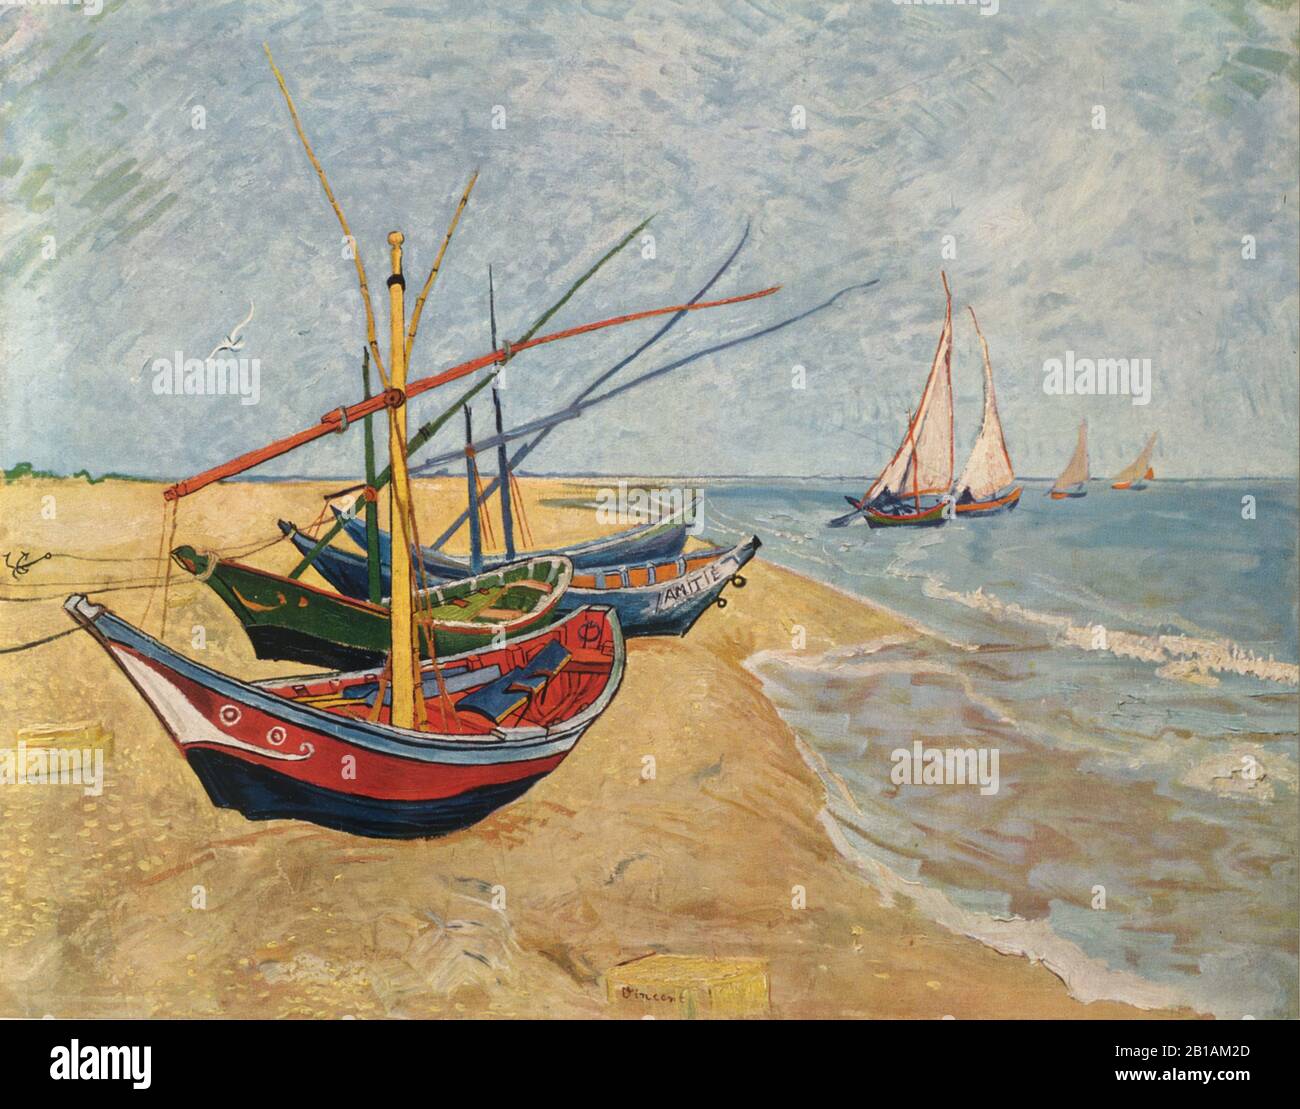 Barche da pesca sulla spiaggia a Saintes-Maries 1888 dipinto di Vincent van Gogh - Immagine Di Alta risoluzione e qualità Foto Stock